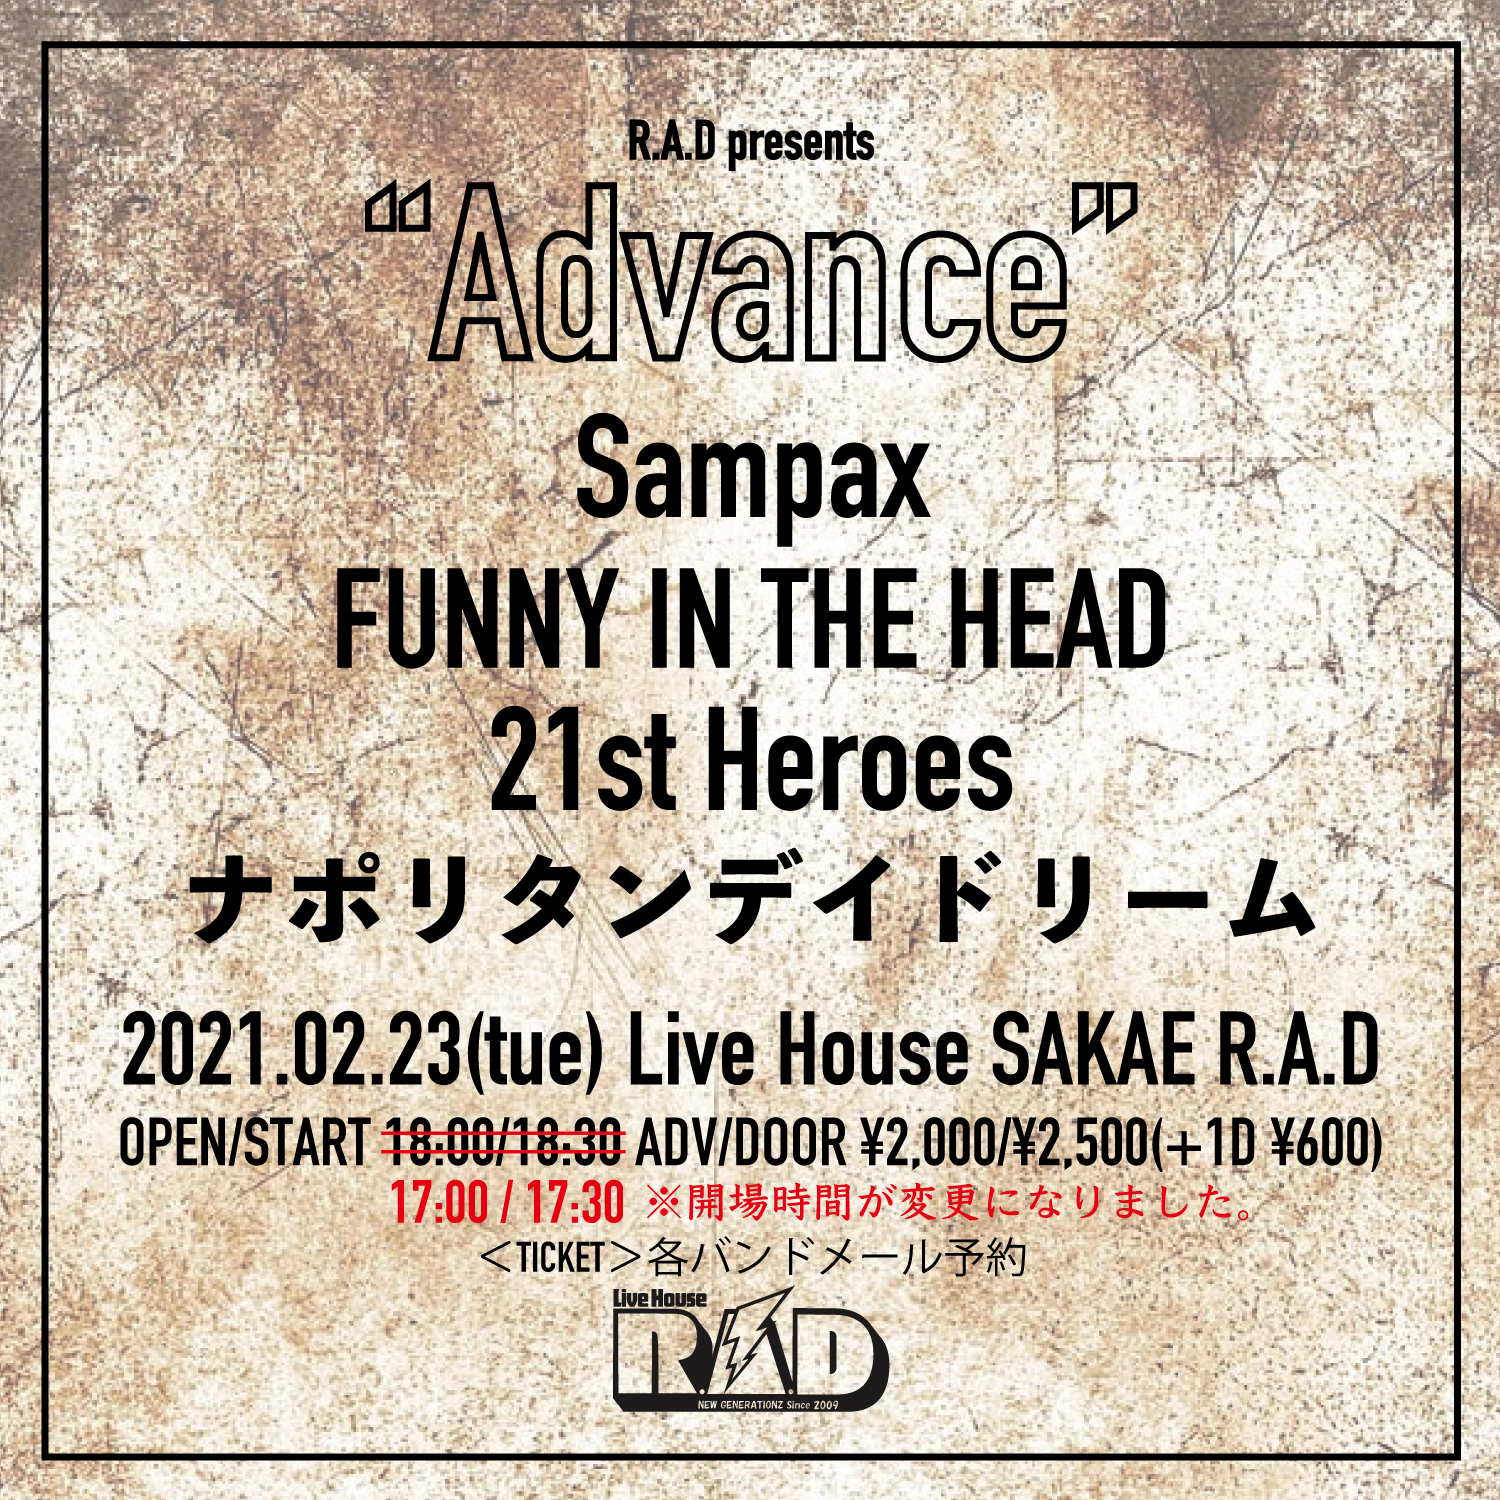 (※時間変更)R.A.D presents "Advance "